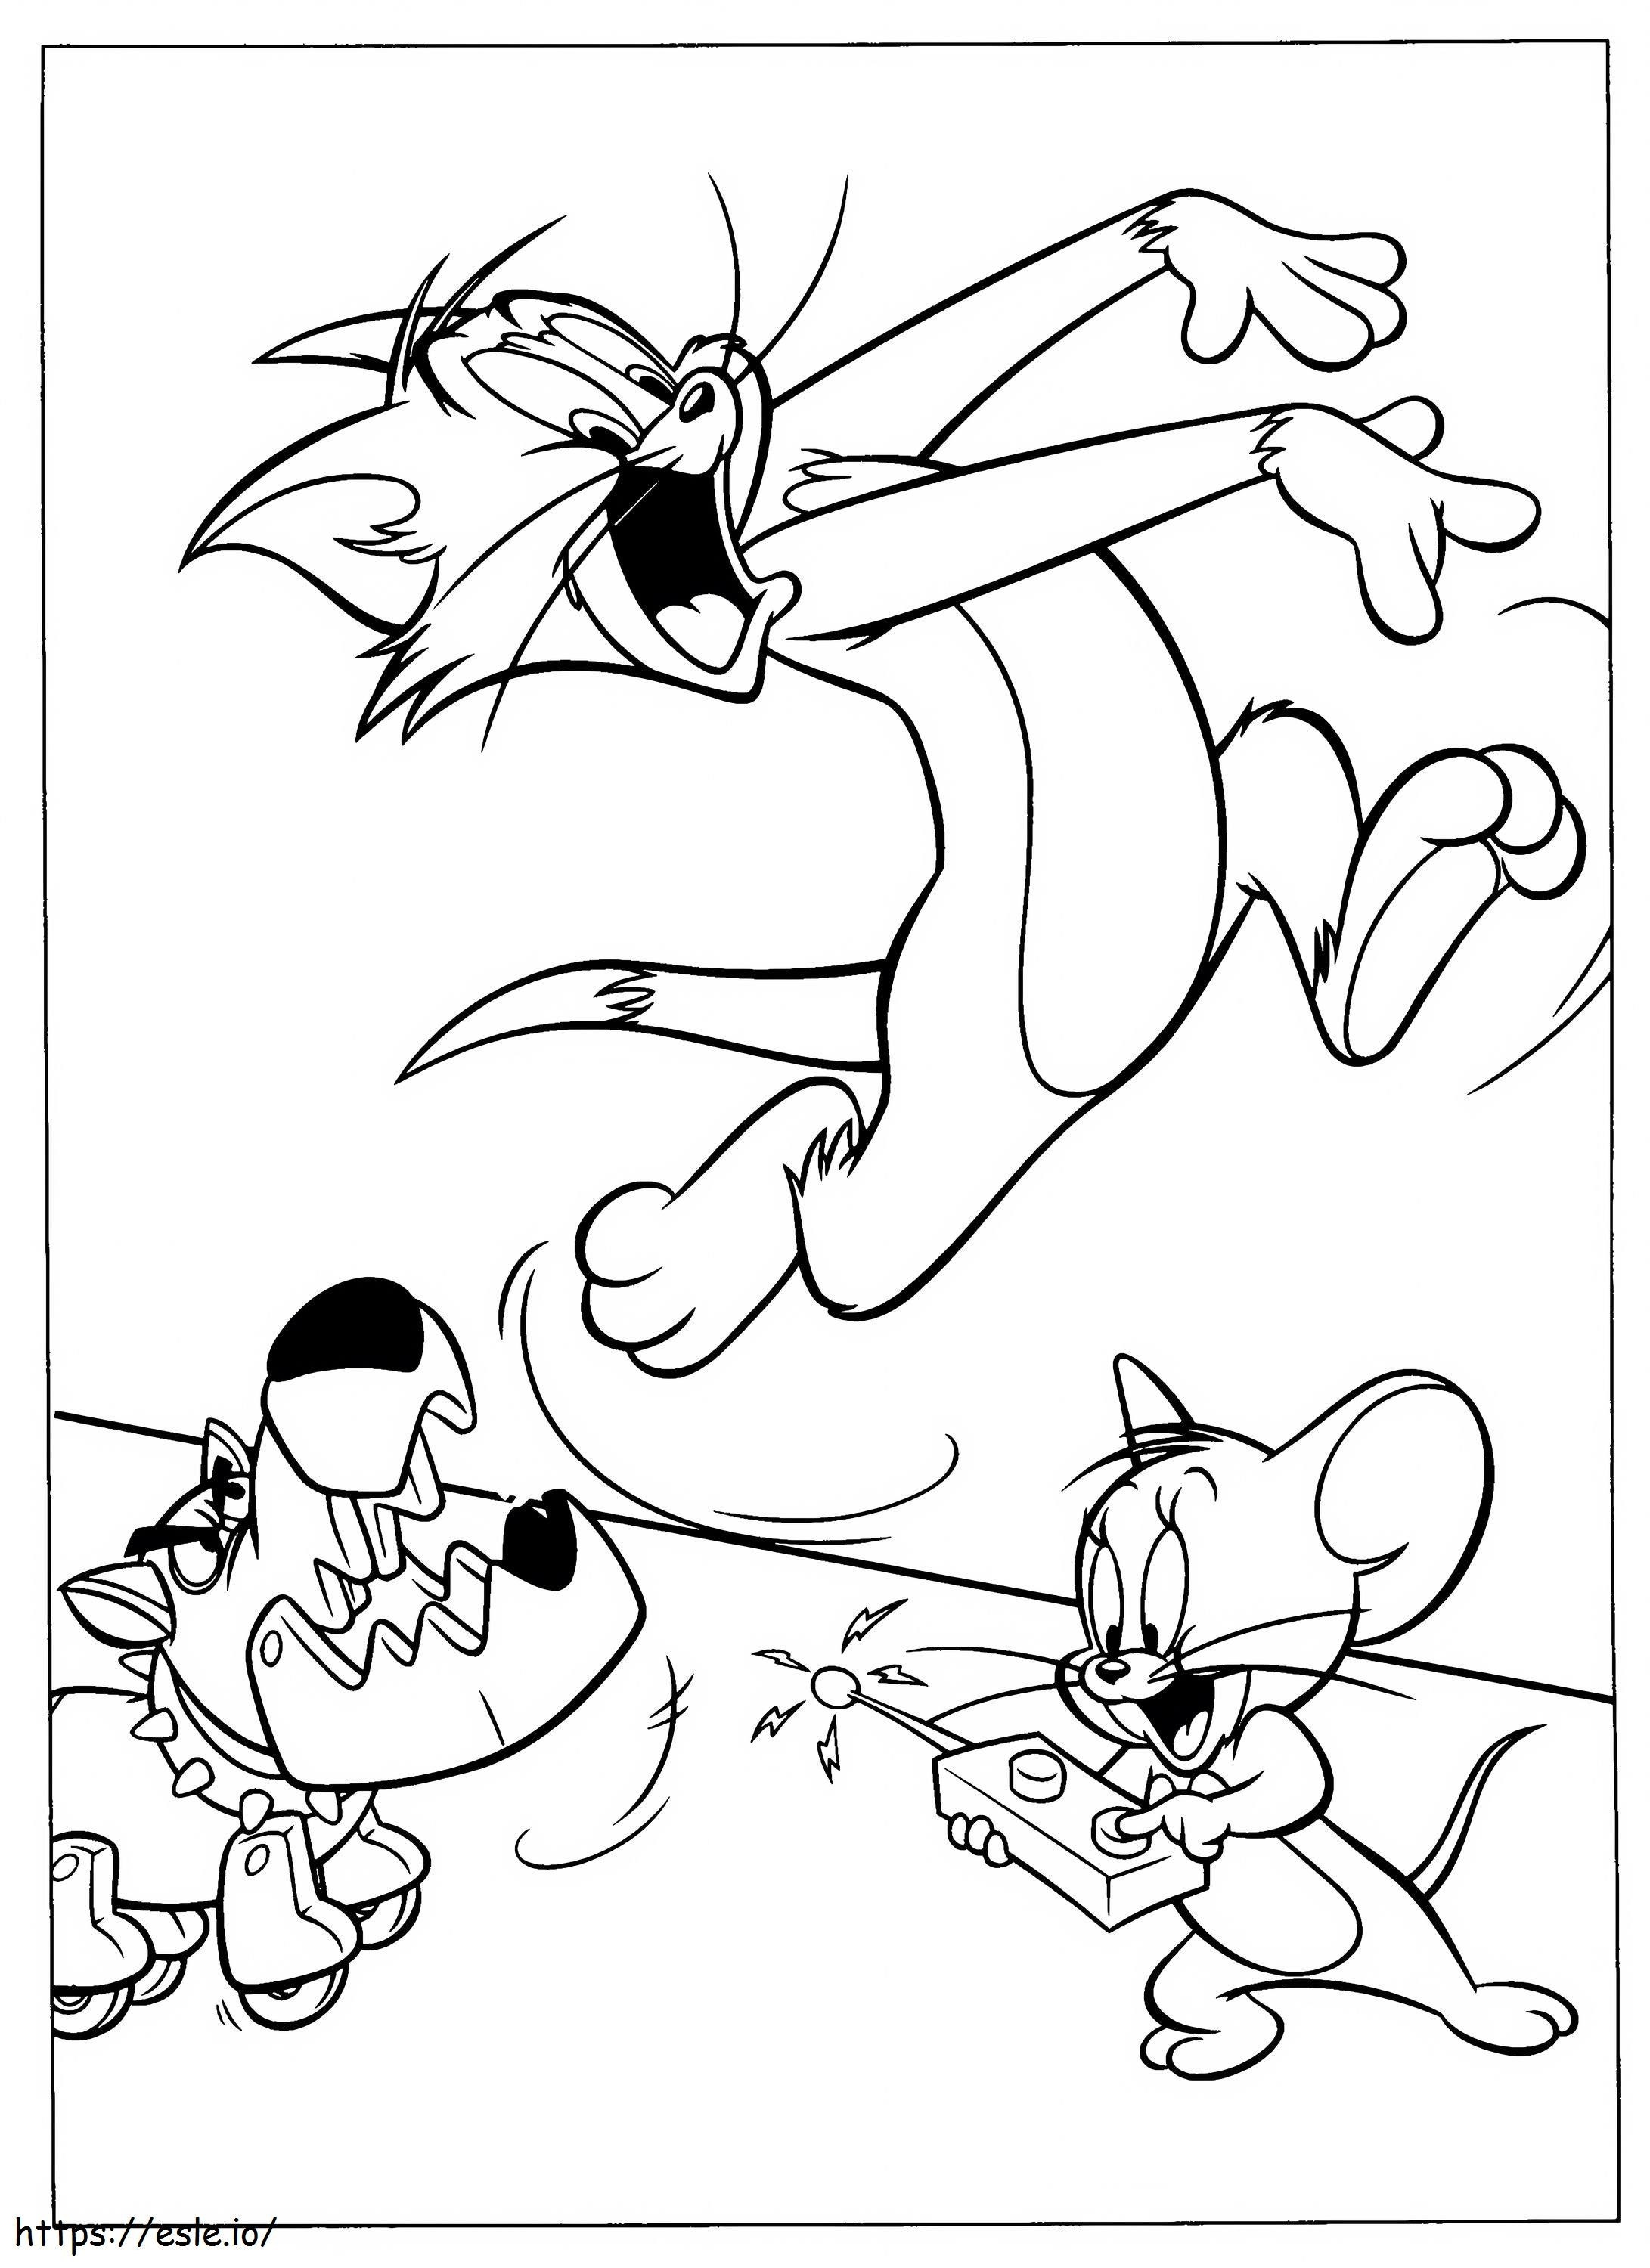  Tom ve Jerry Disney Picgifleri Disney 9 Ölçekli 2 boyama